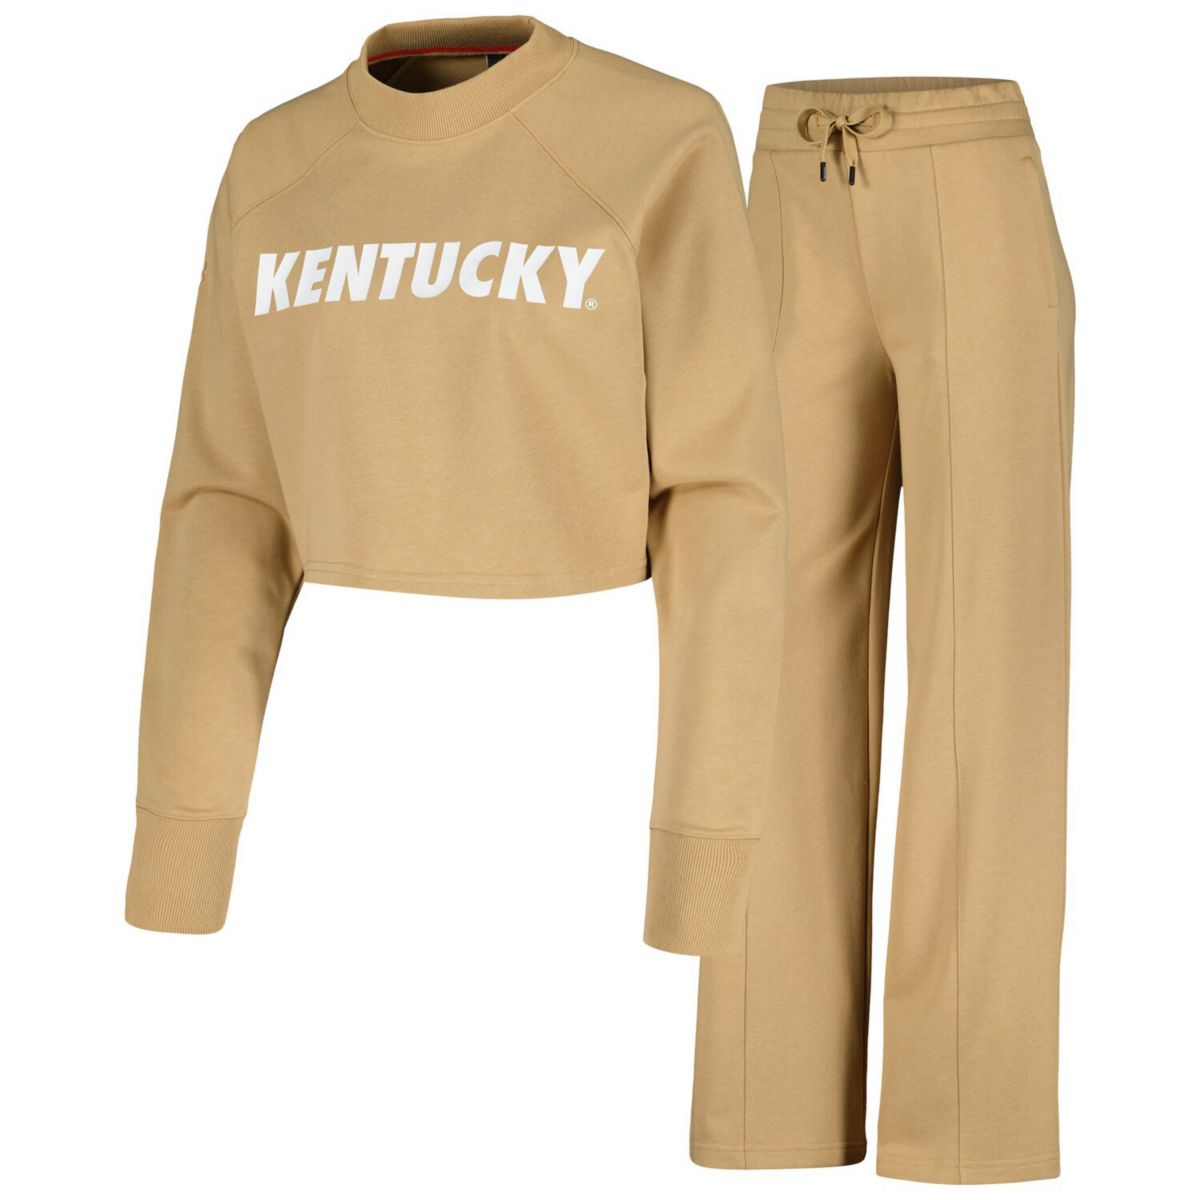 Женский комплект из укороченной толстовки и спортивных штанов реглан светло-коричневого цвета Kentucky Wildcats Unbranded